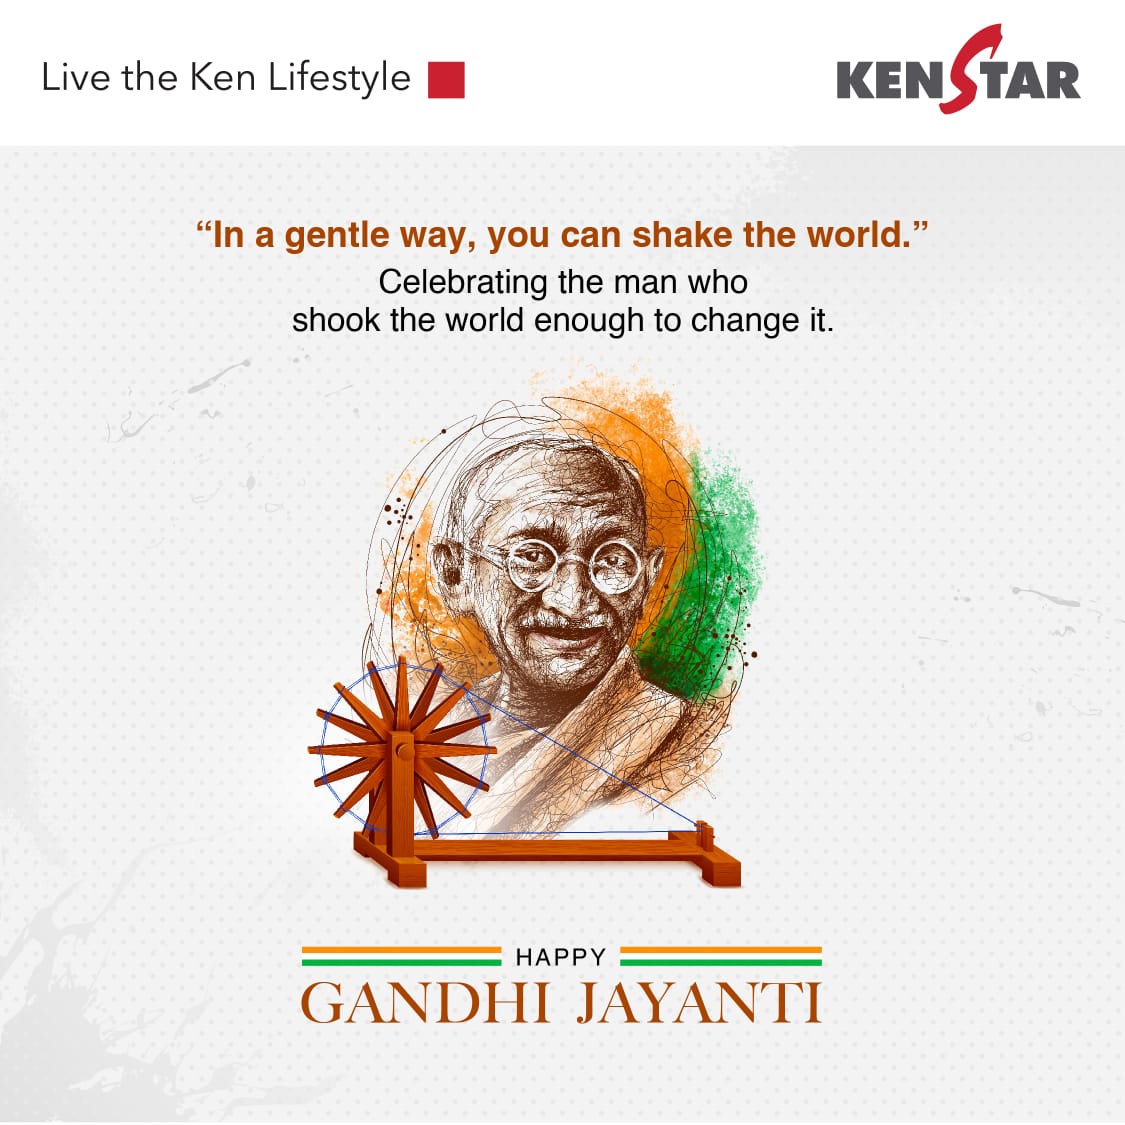 Wishing you a happy #GandhiJayanti.

#Kenstar #LiveTheKenLifestyle #MahatmaGandhi #FatheOfTheNation #Mahatma #GandhiQuotes #India #Nonviolence